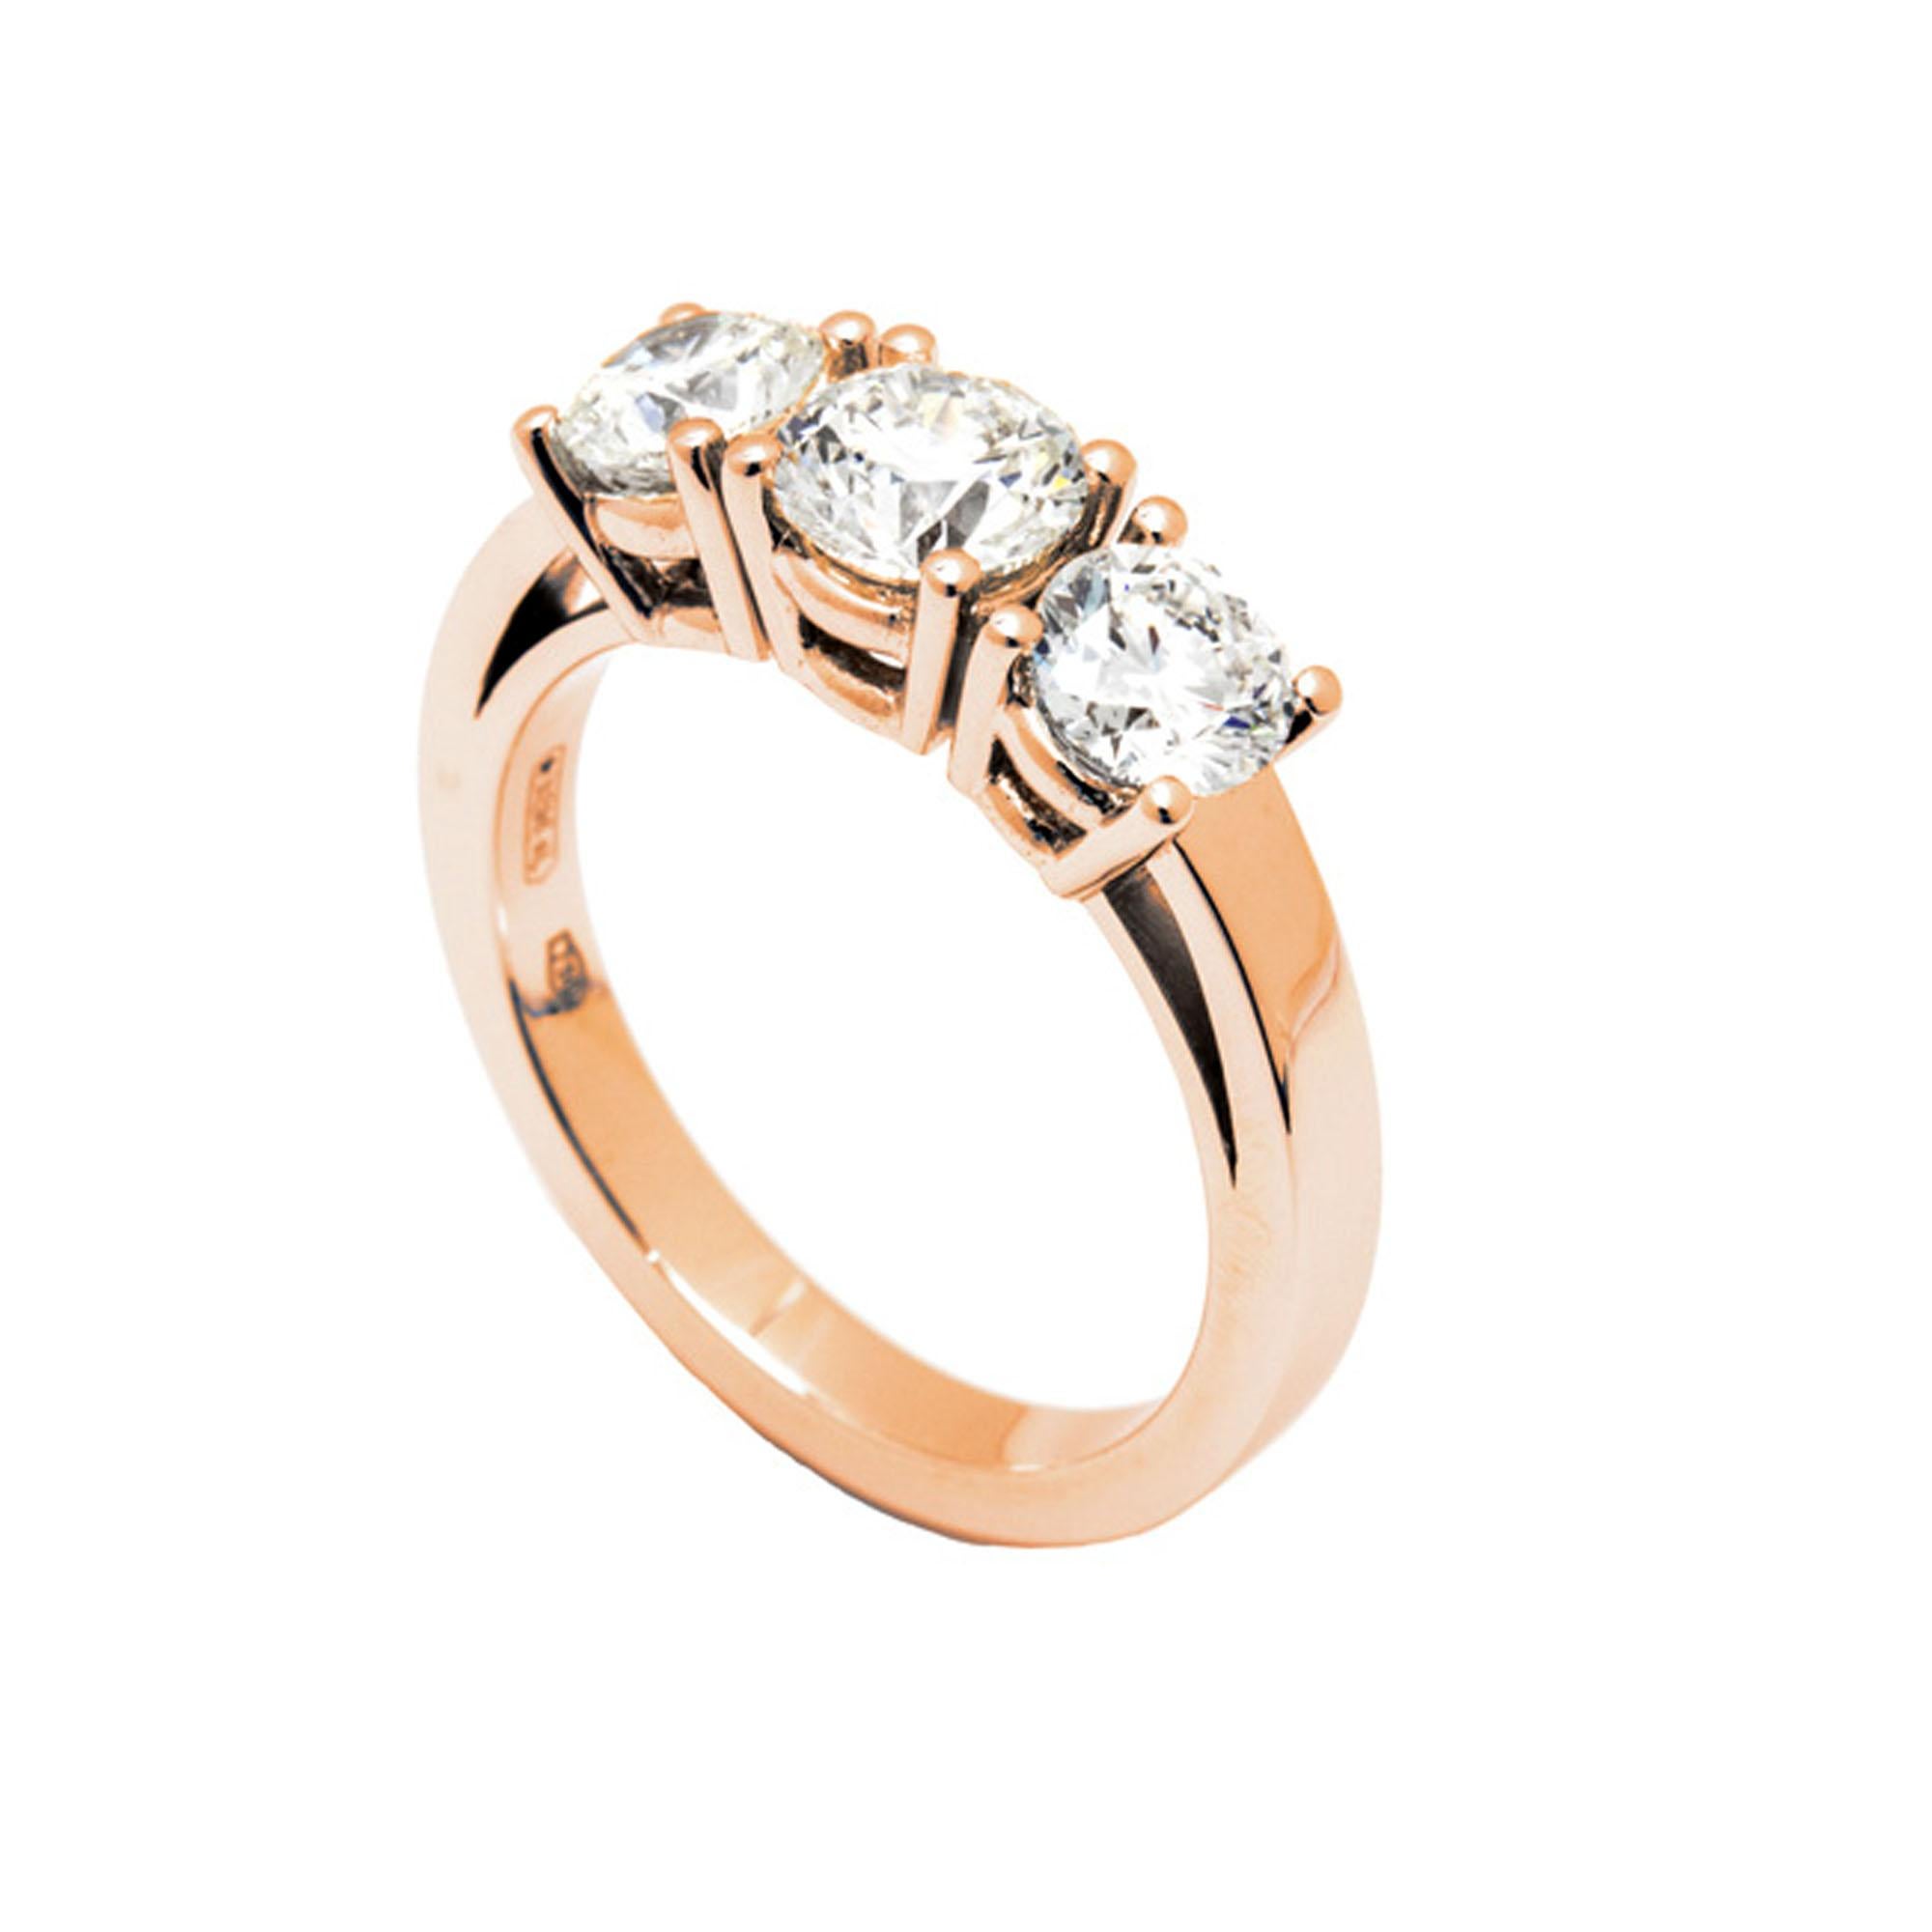 Der GIA-zertifizierte Dégradé-Diamantring mit drei Steinen im Rundschliff ist ein wahrhaft außergewöhnliches Schmuckstück, ein Fest der Eleganz und Kunstfertigkeit. Jeder der drei prächtigen Diamanten, die diesen Ring schmücken, wurde vom